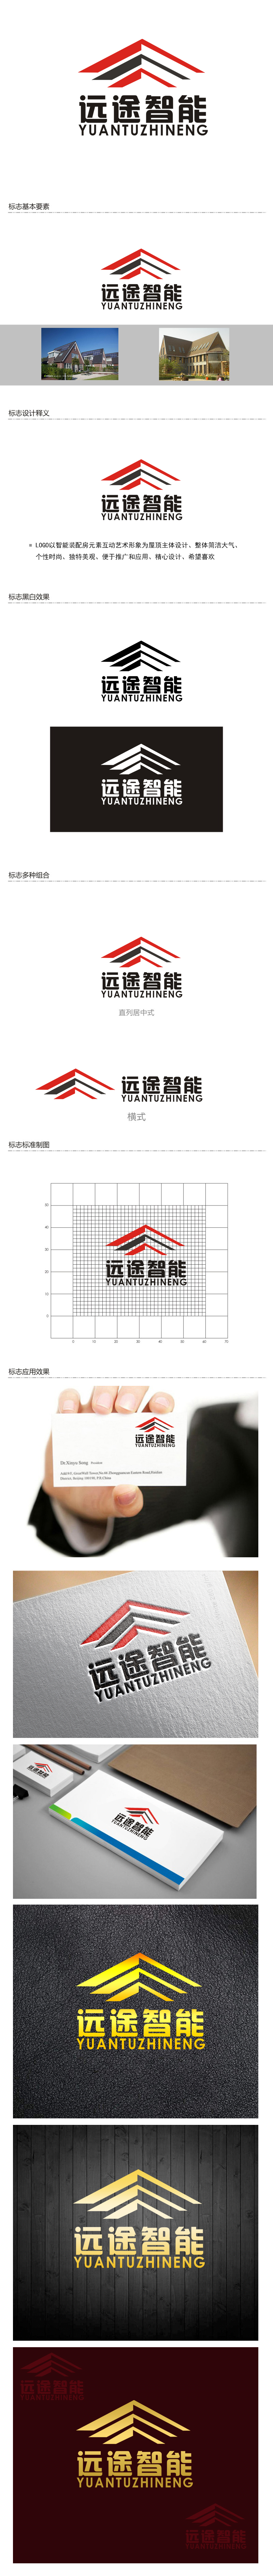 李正东的江苏远途智能装配房有限公司logo设计